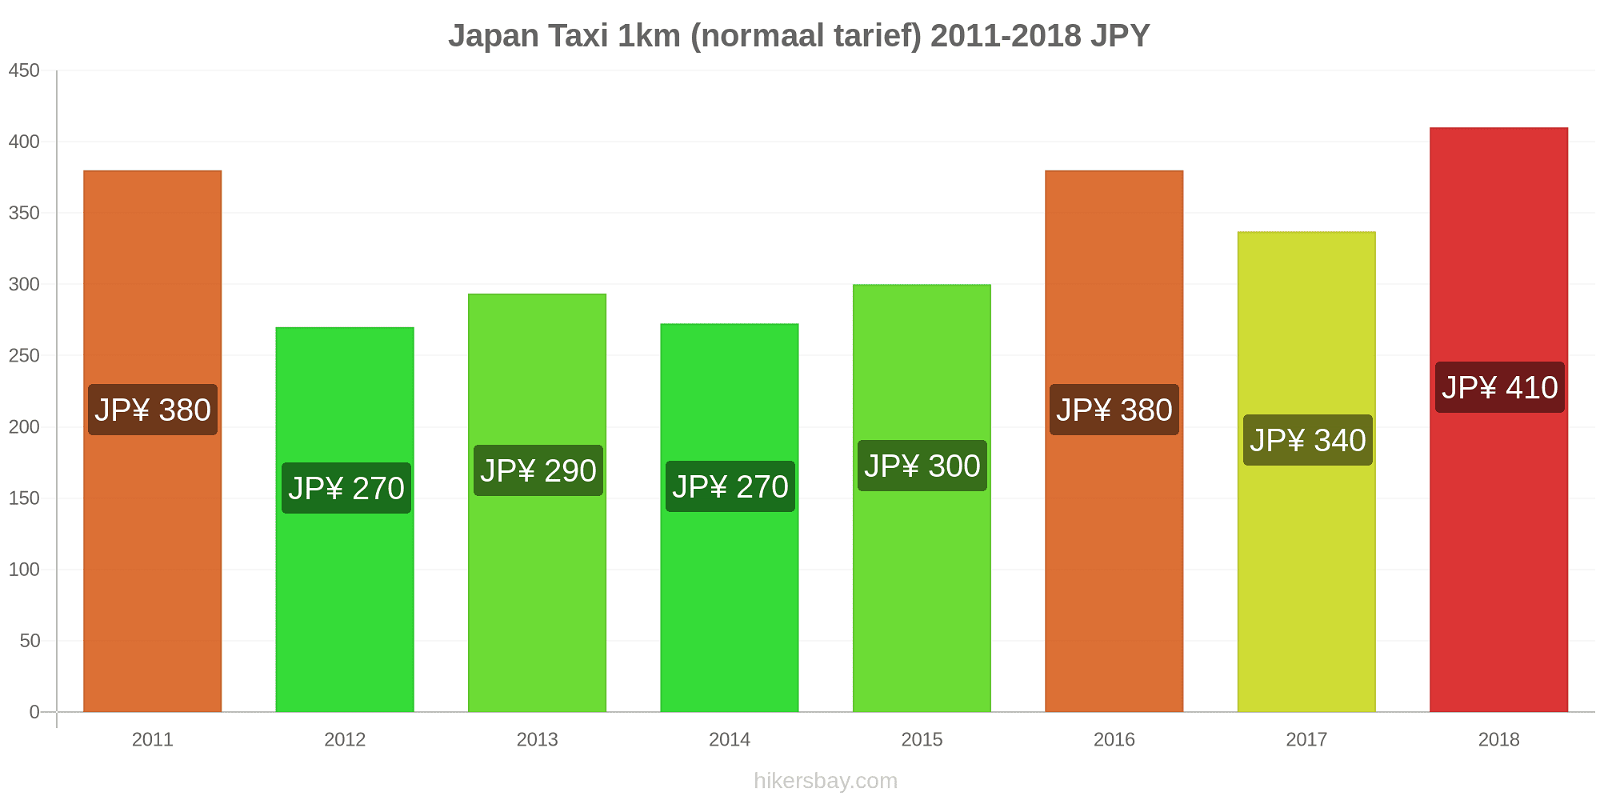 Japan prijswijzigingen Taxi 1km (normaal tarief) hikersbay.com